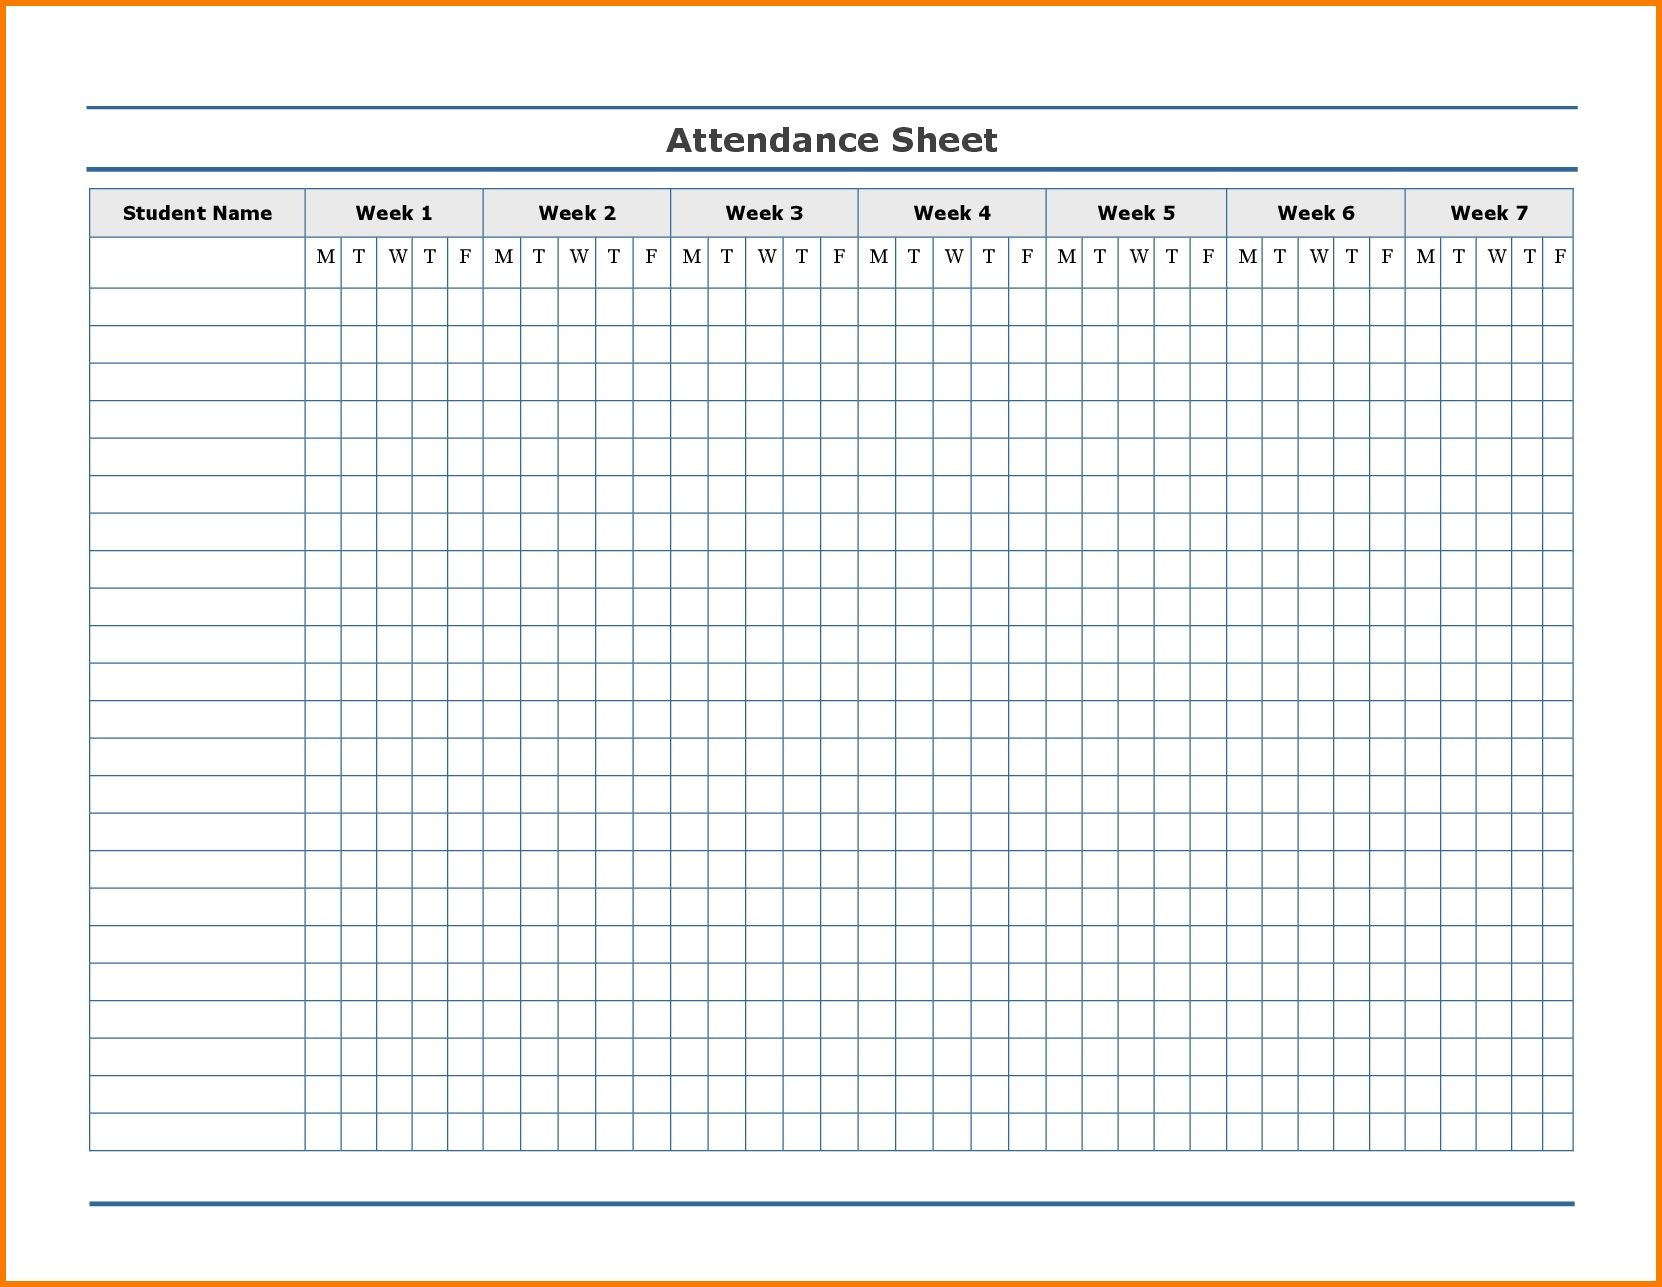 Free Employee Attendance Calendar | Employee Tracker for 2020 Employee Attendance Calendar Free